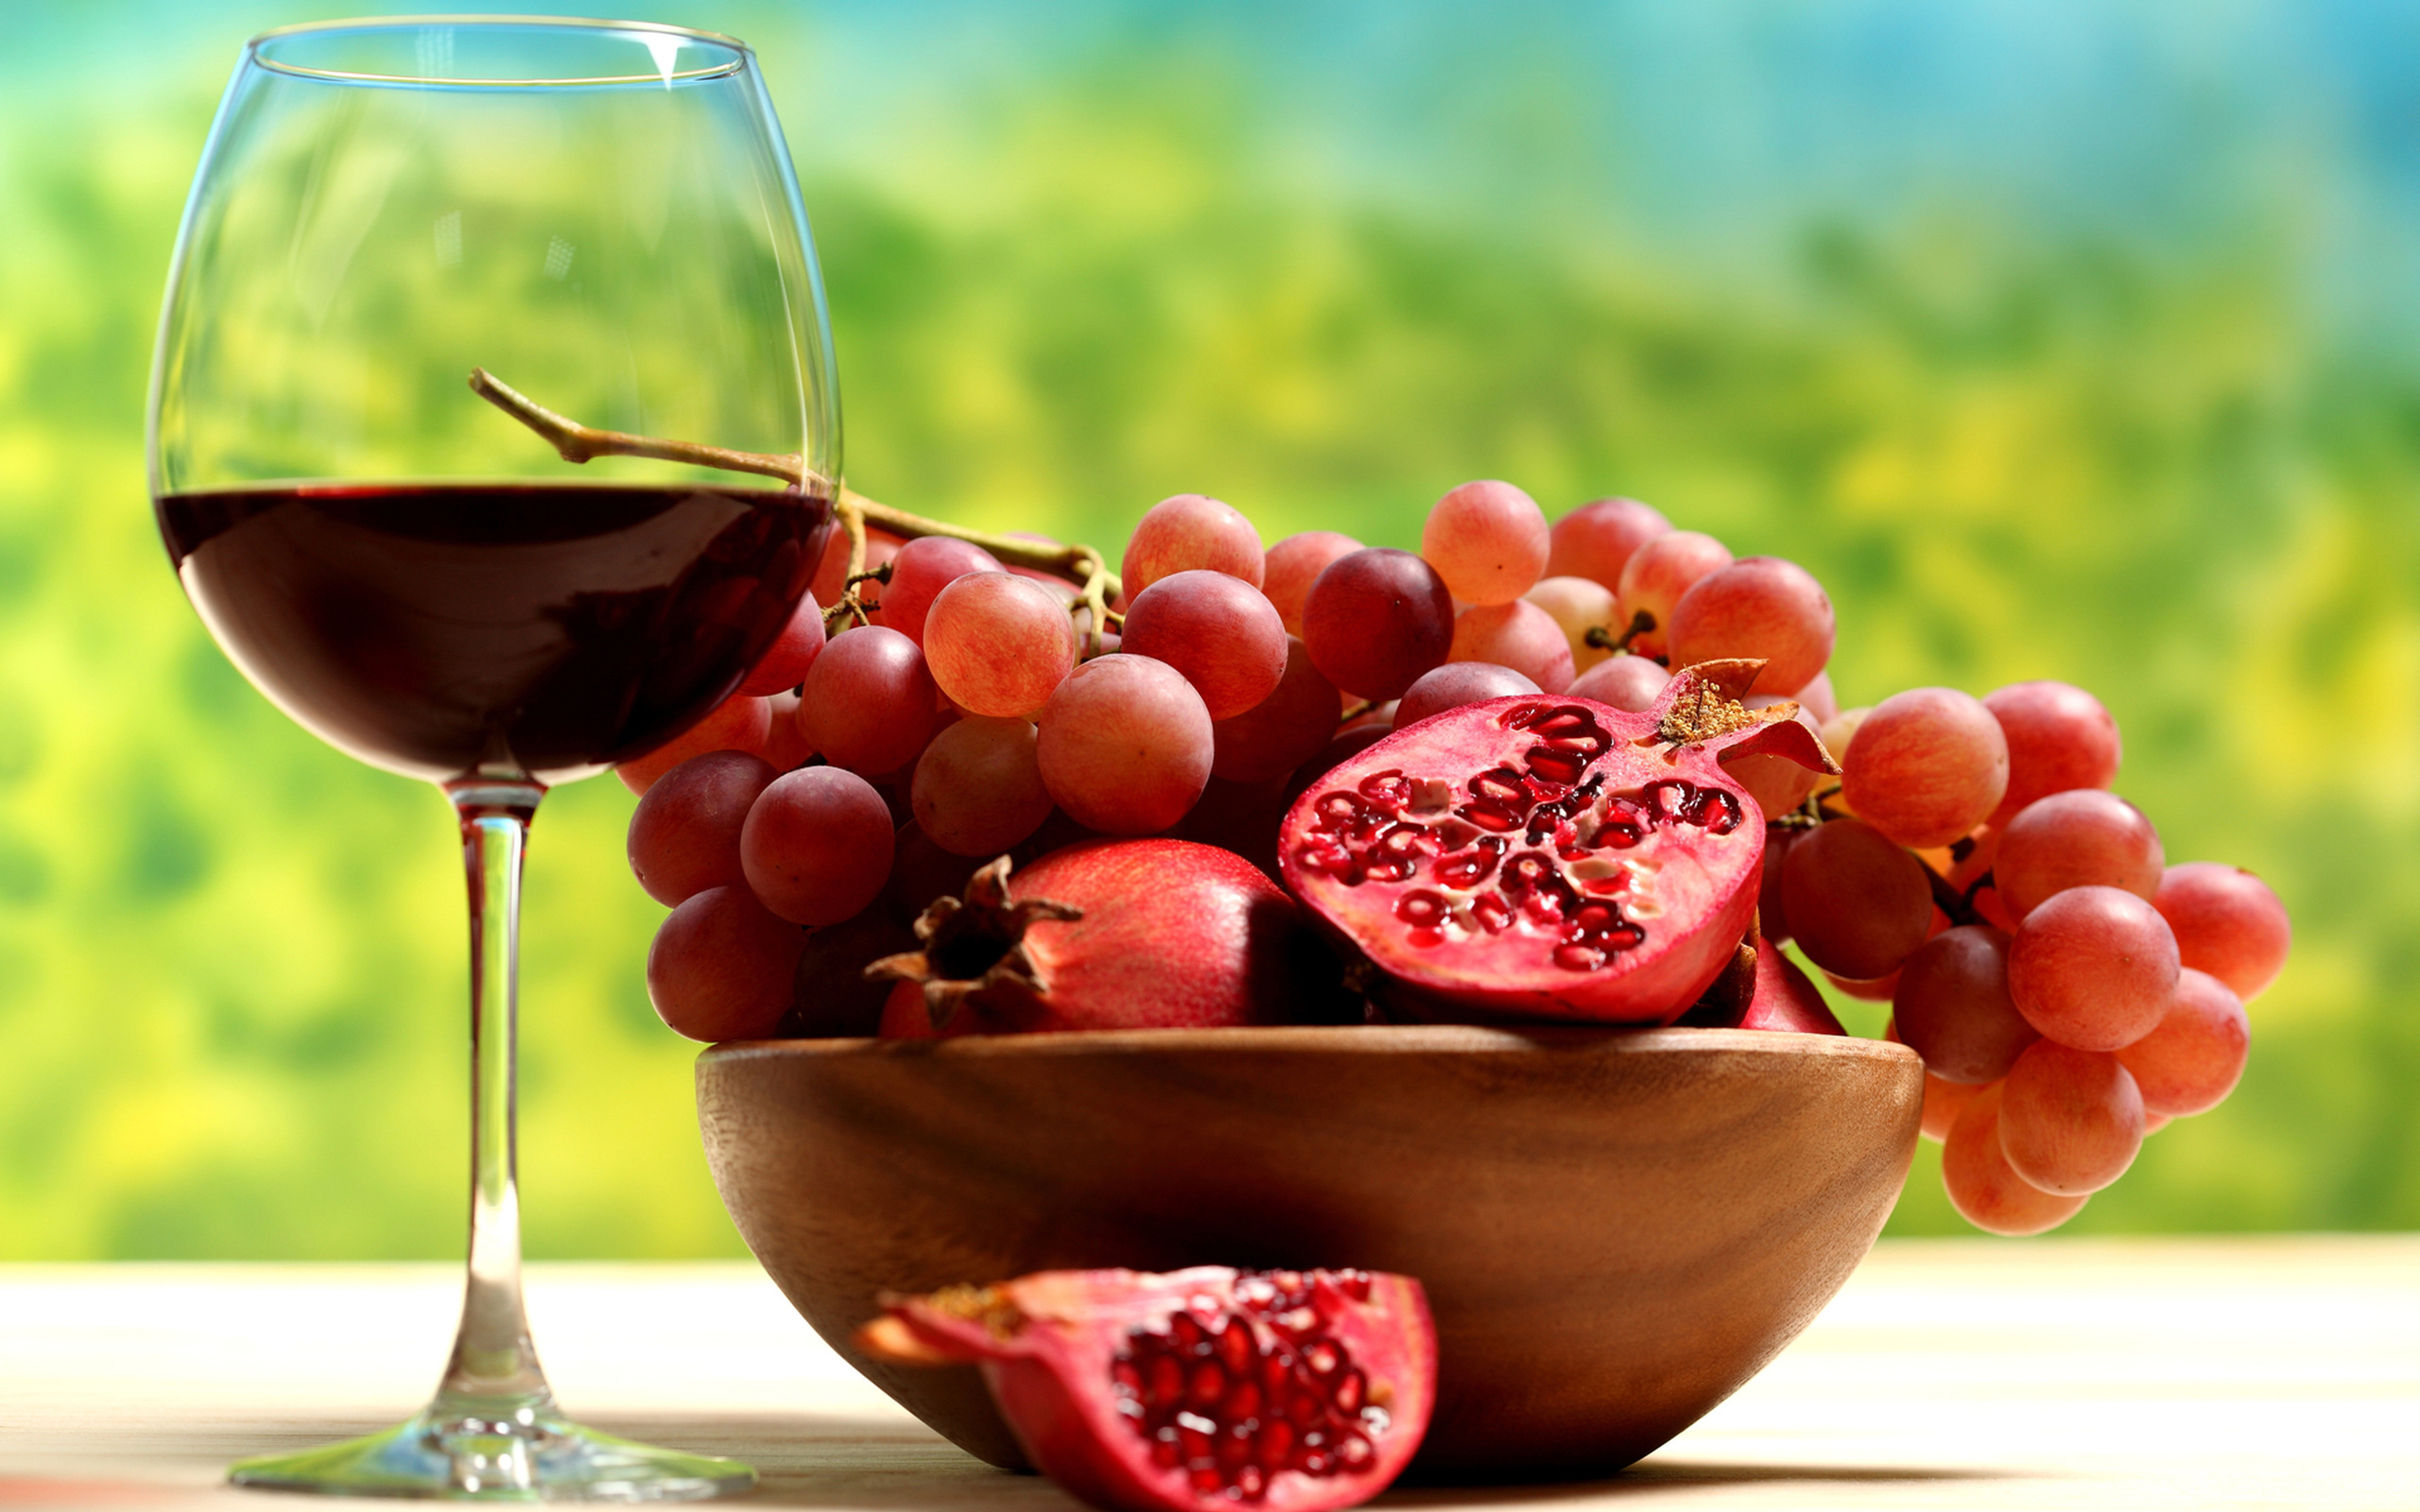 grapes, fruits, food, vine, drinks